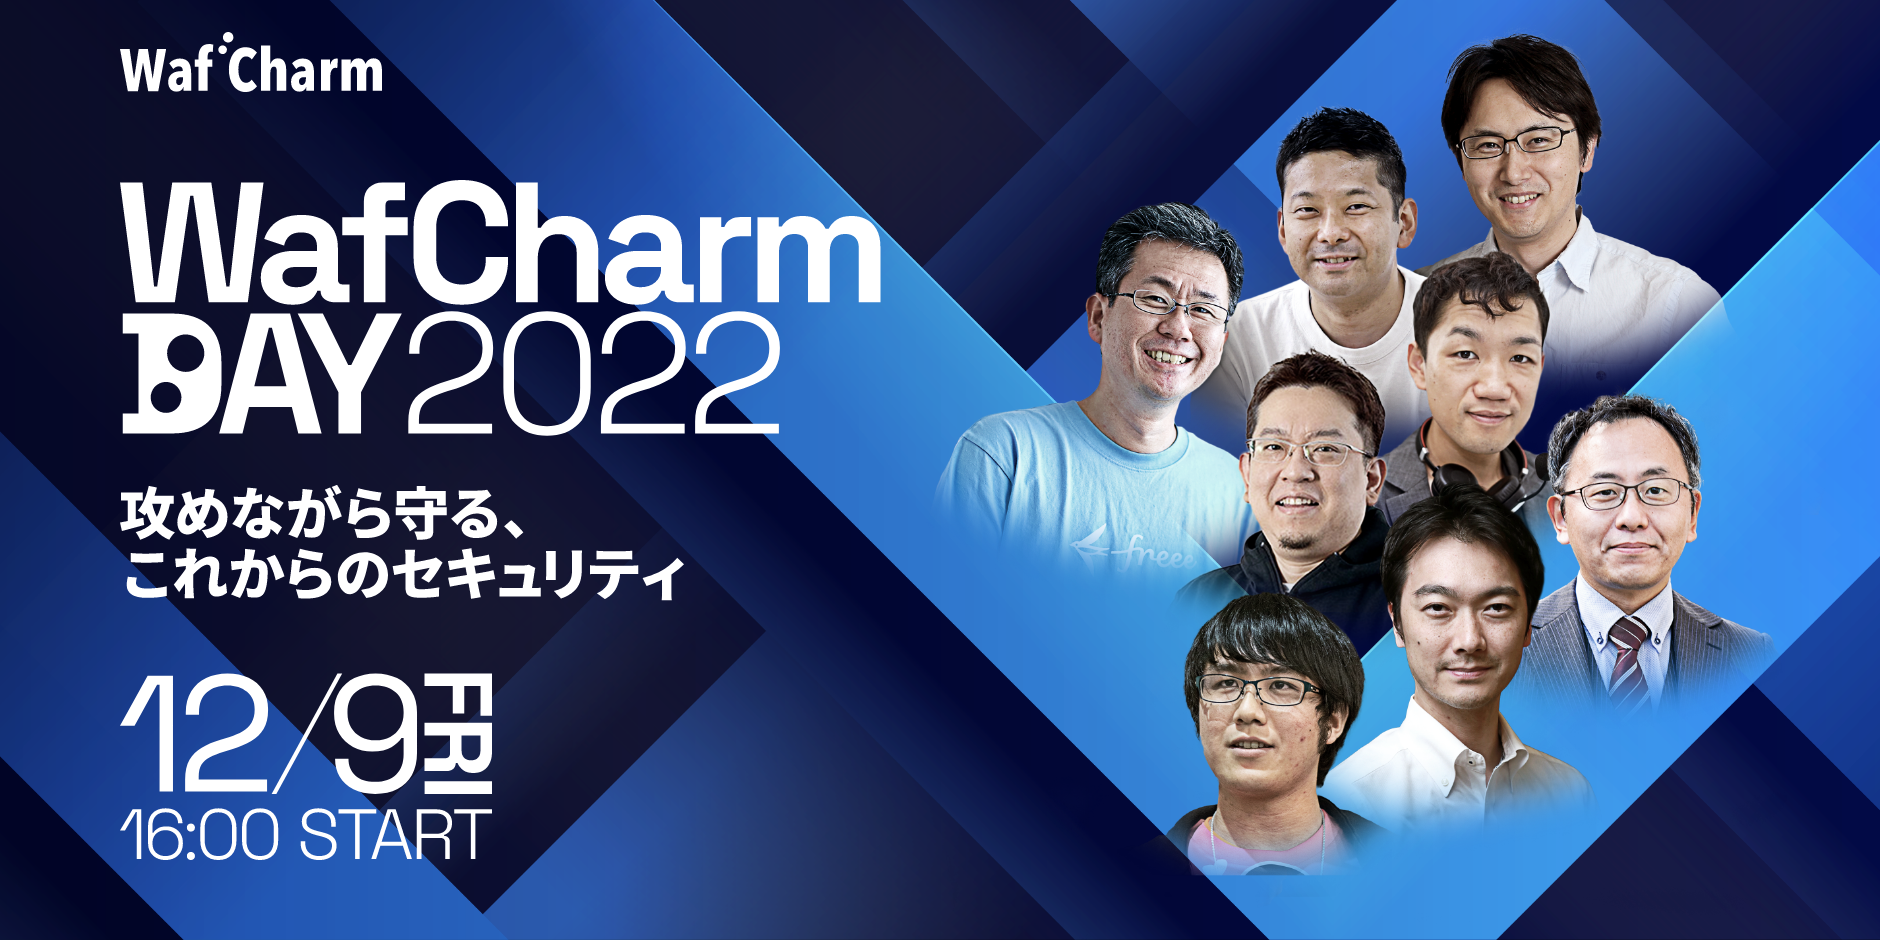 【12月9日】WafCharm Day 2022 に当社の佐竹が登壇します